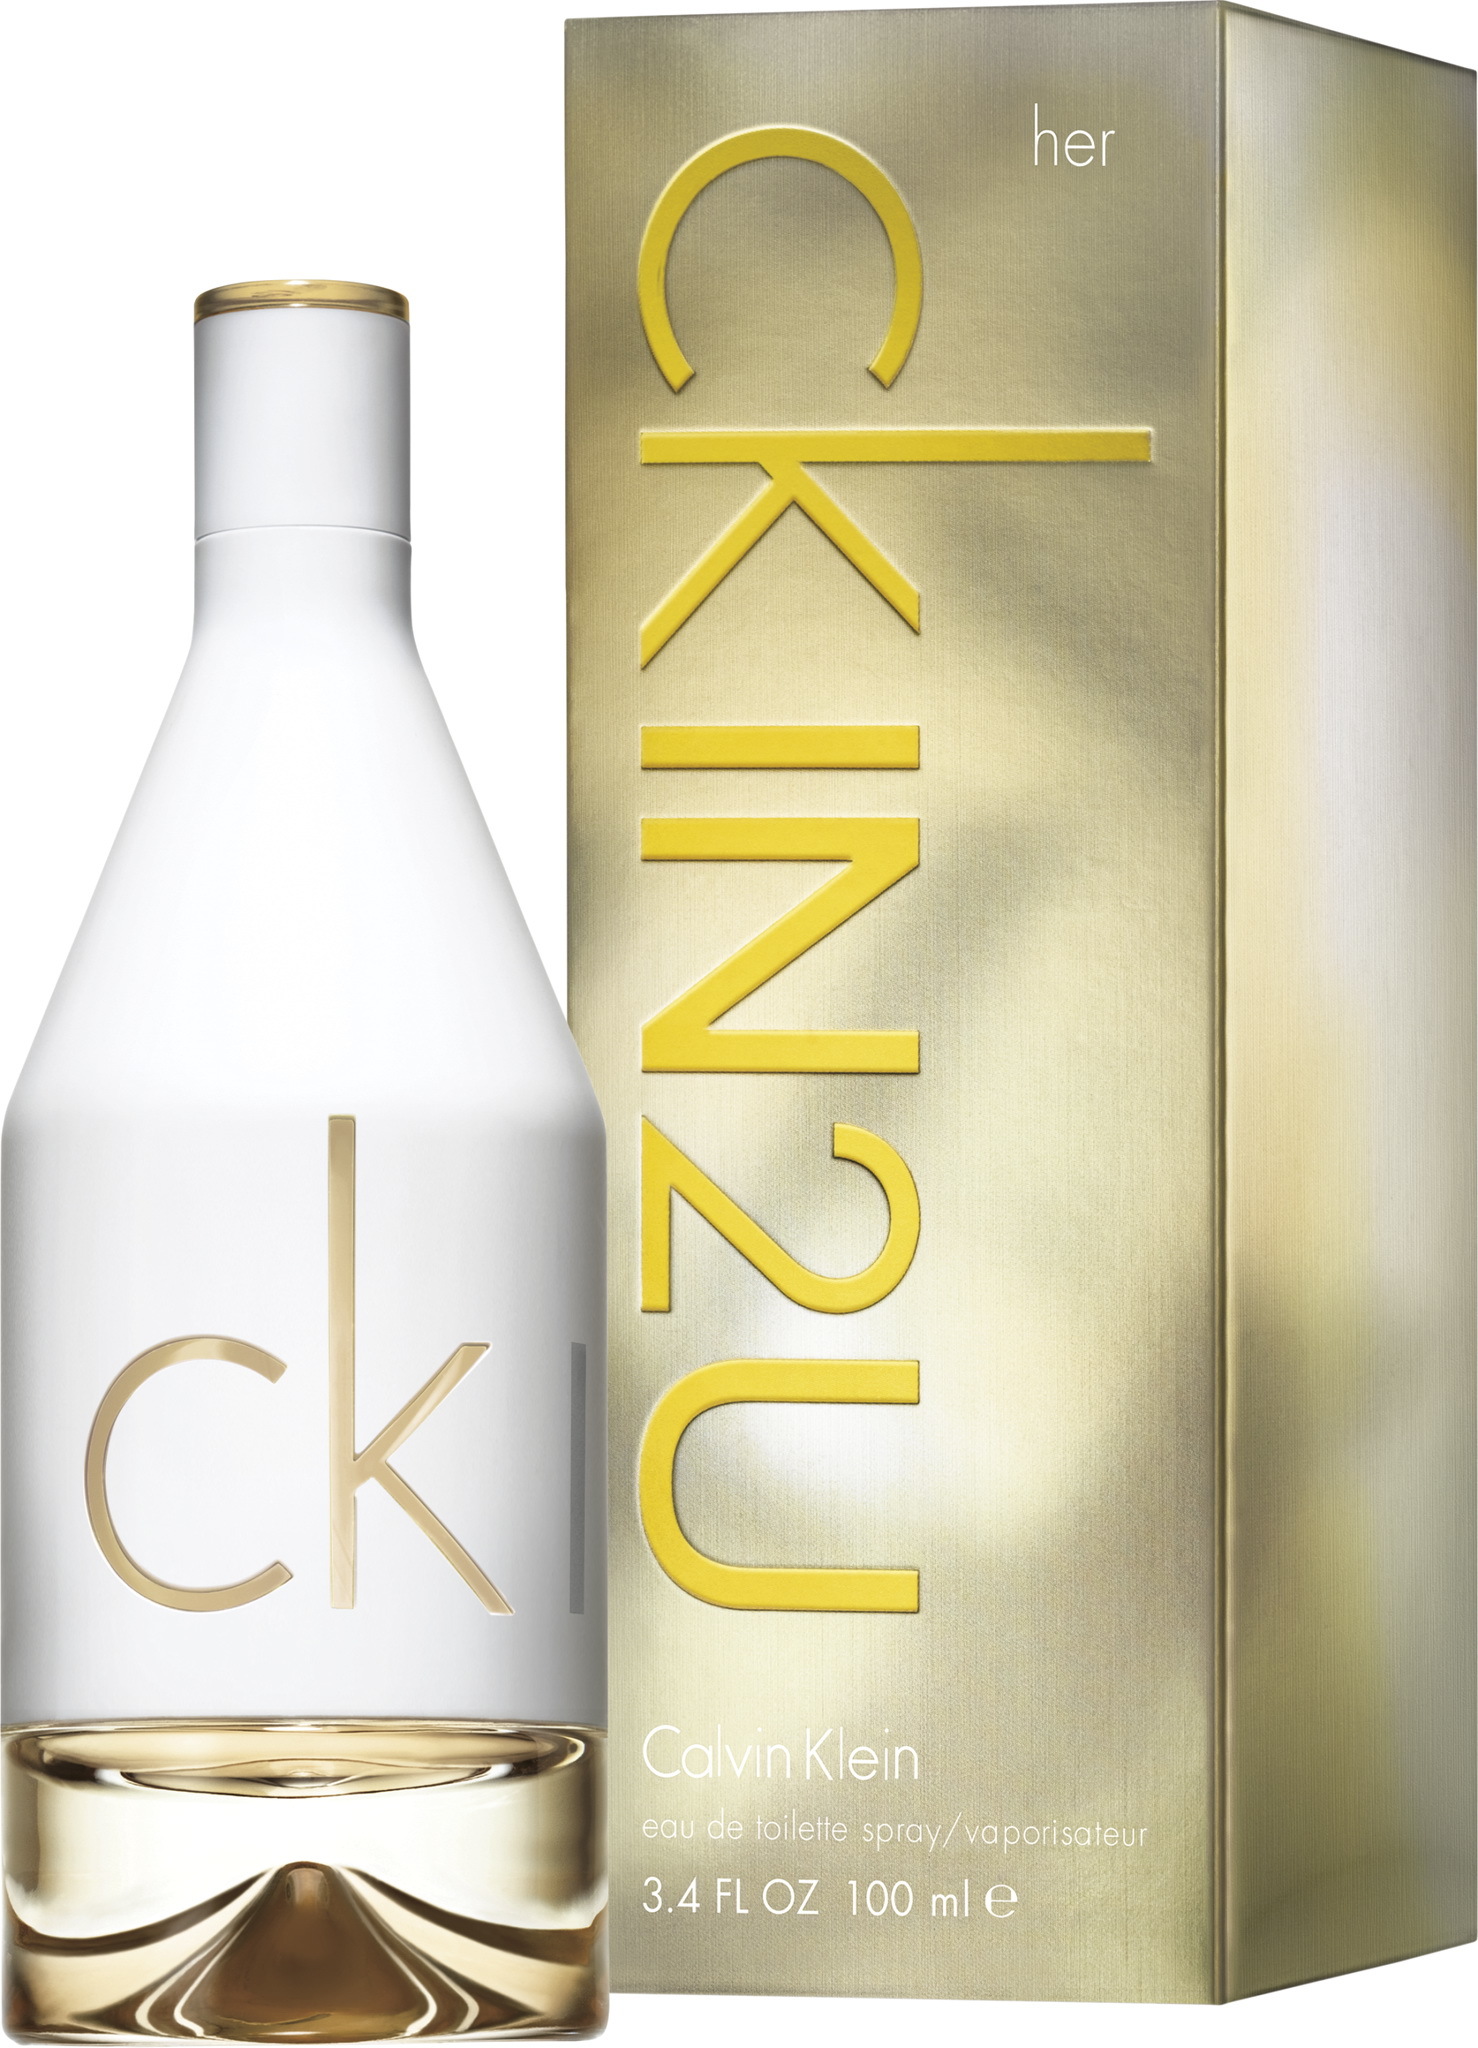 ck perfume in2u price